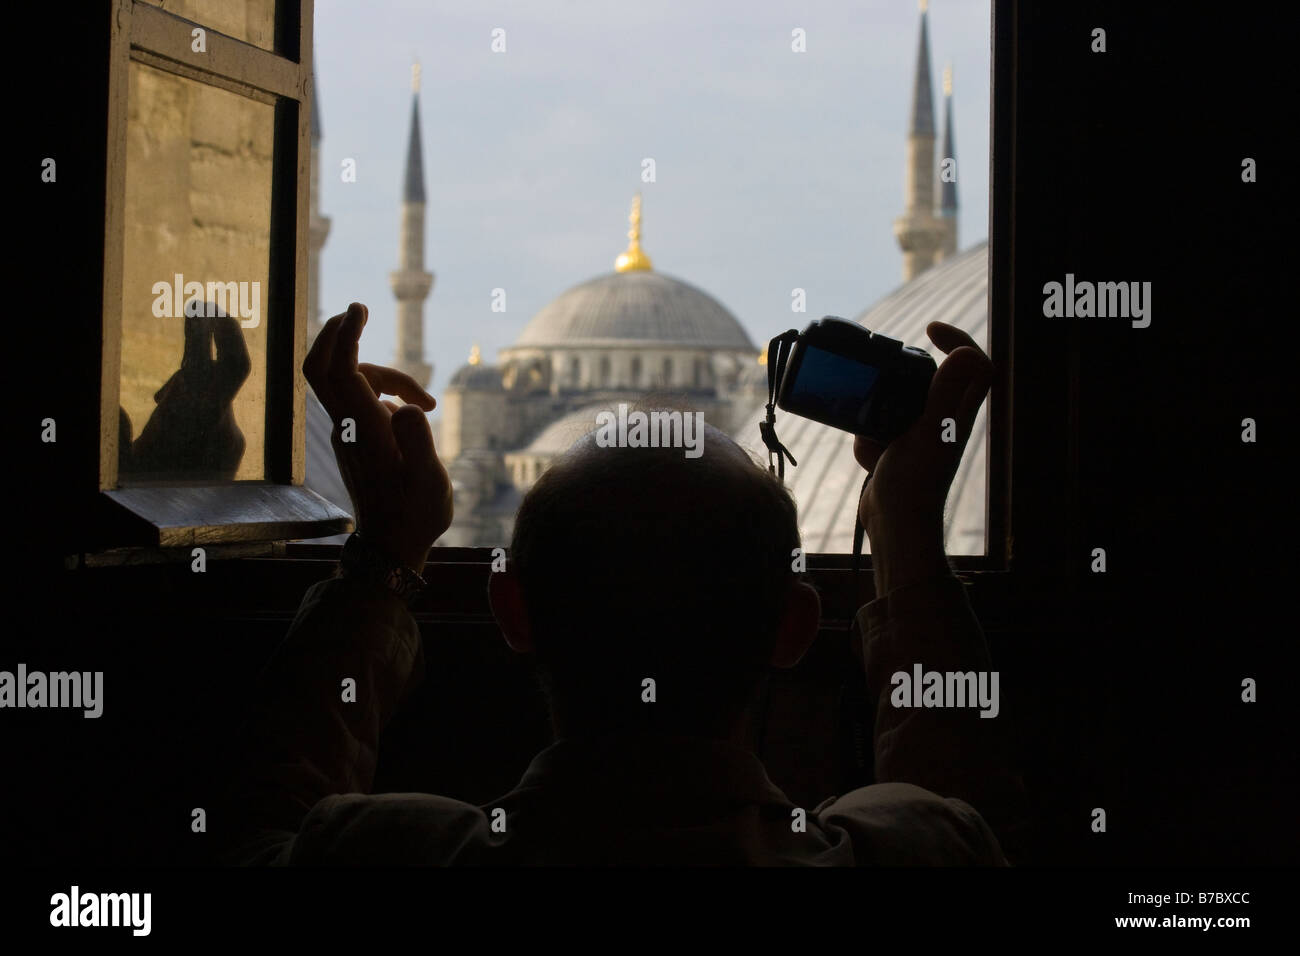 Tomar una imagen turística de la Mezquita Azul desde el interior de la Santa Sofía en Estambul TURQUÍA Foto de stock